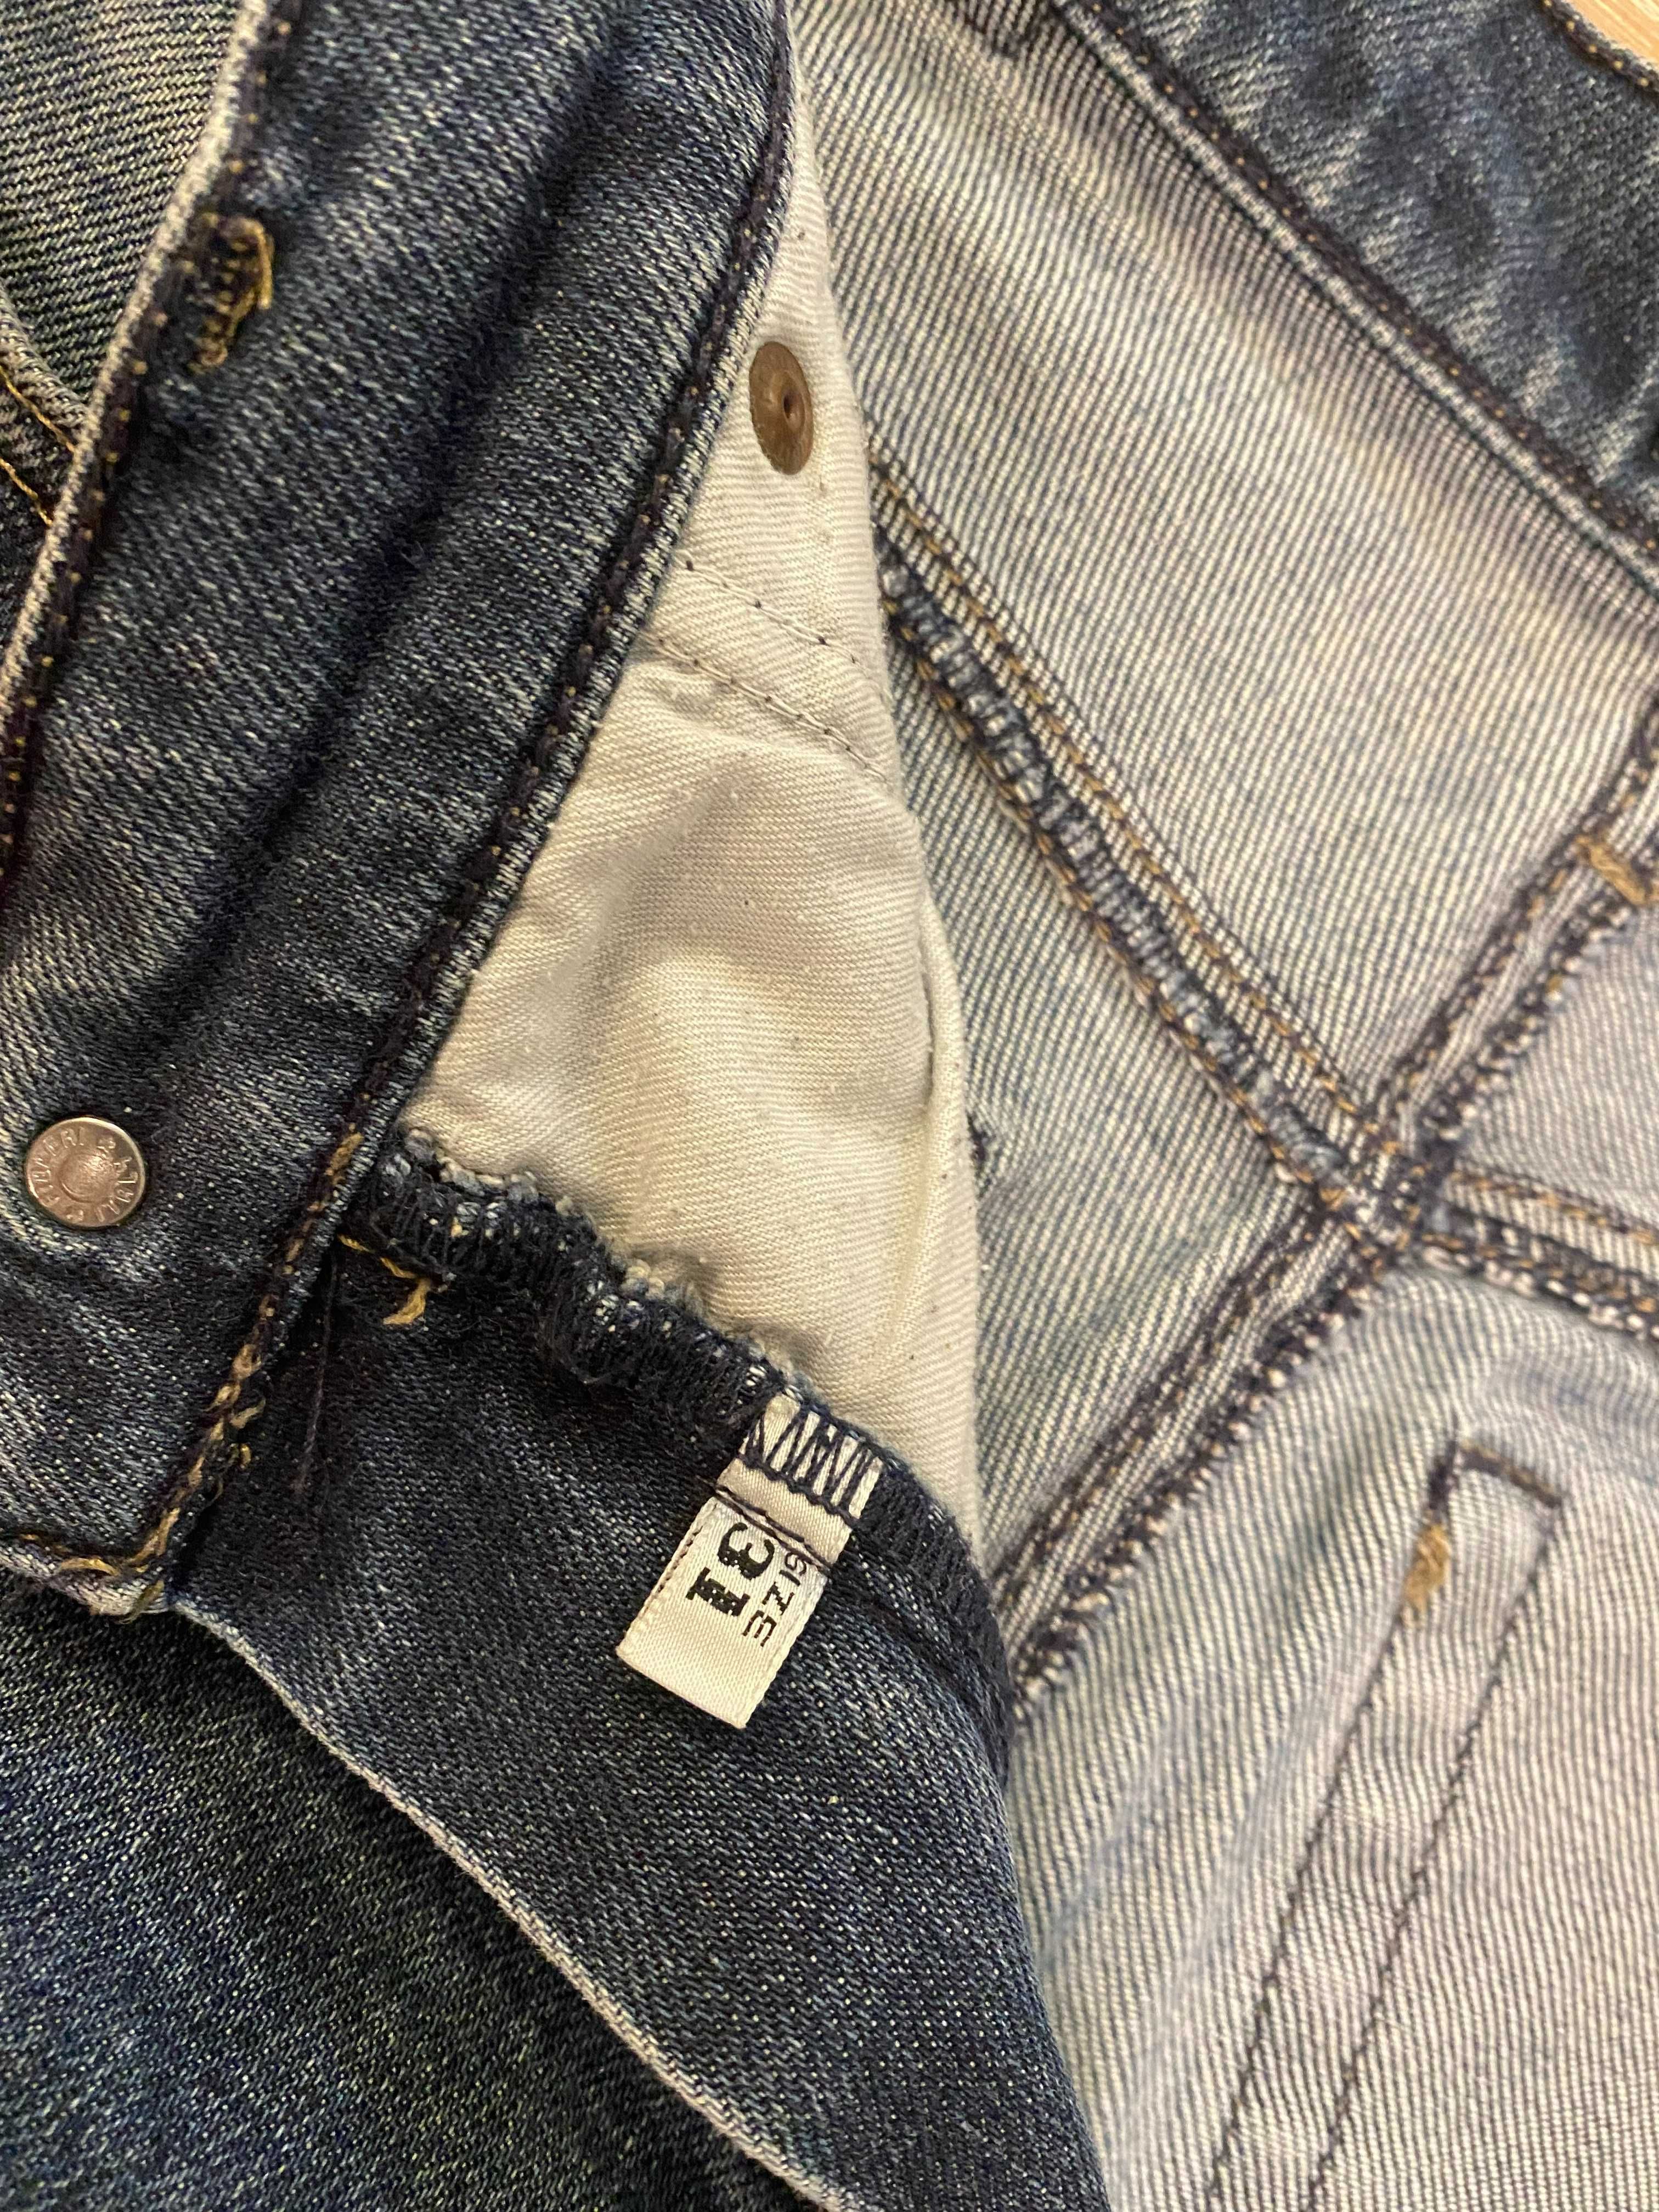 Armani Jeans AJ męskie spodnie jeansy  niebieskie size 31 Streetwear